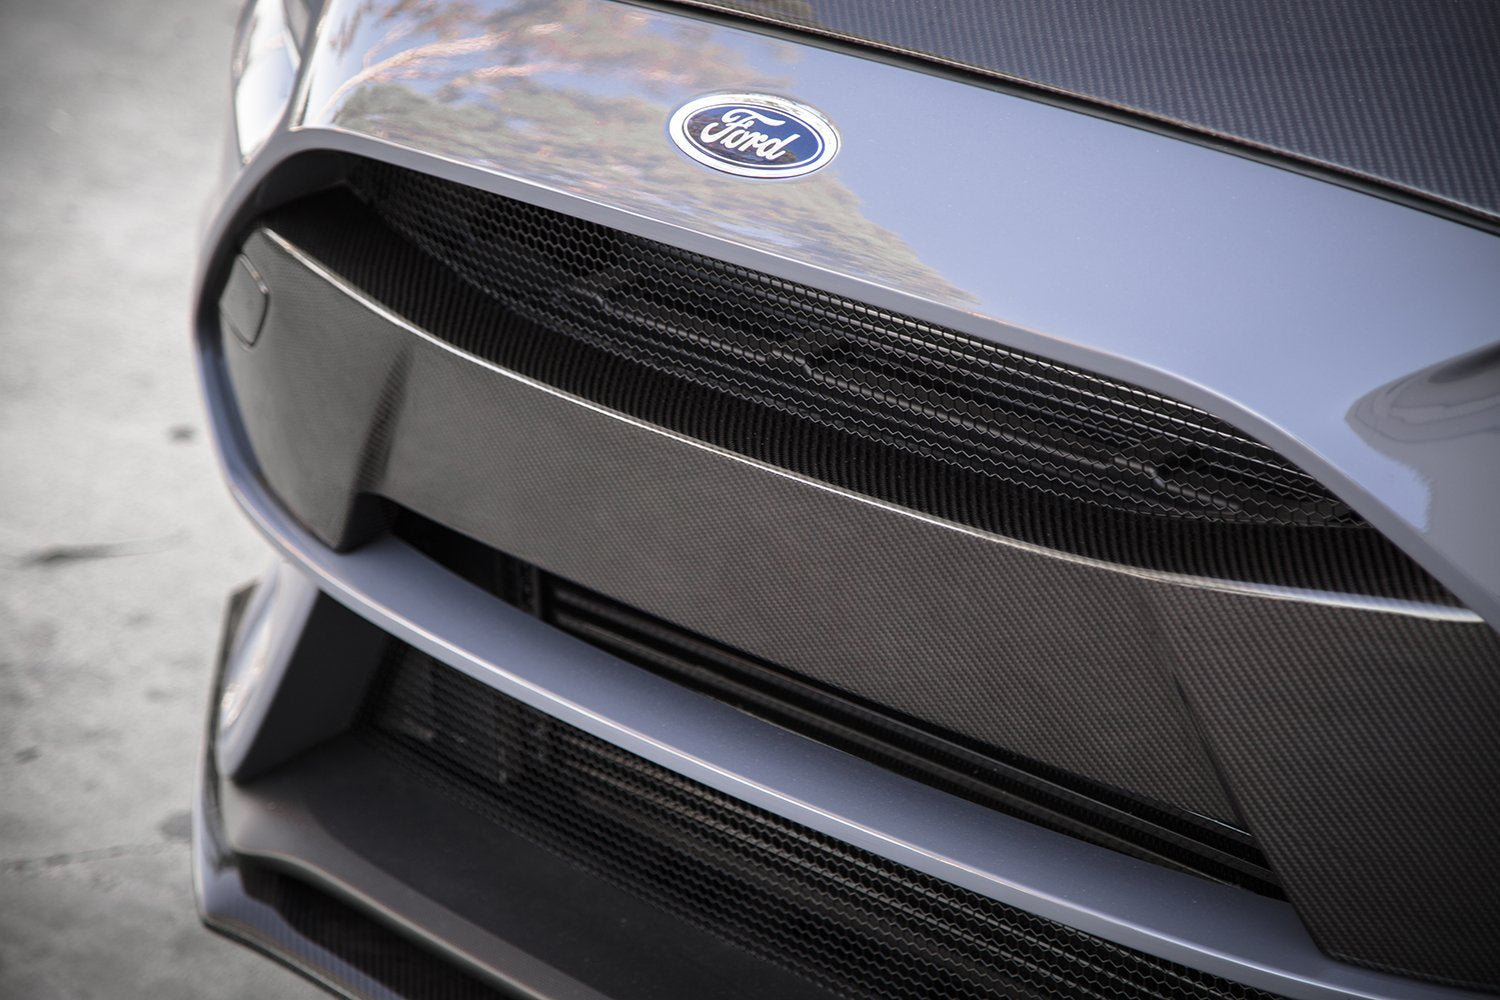 Inserto de parachoques delantero de fibra de carbono Anderson Composites para Ford 2016-18 Focus RS